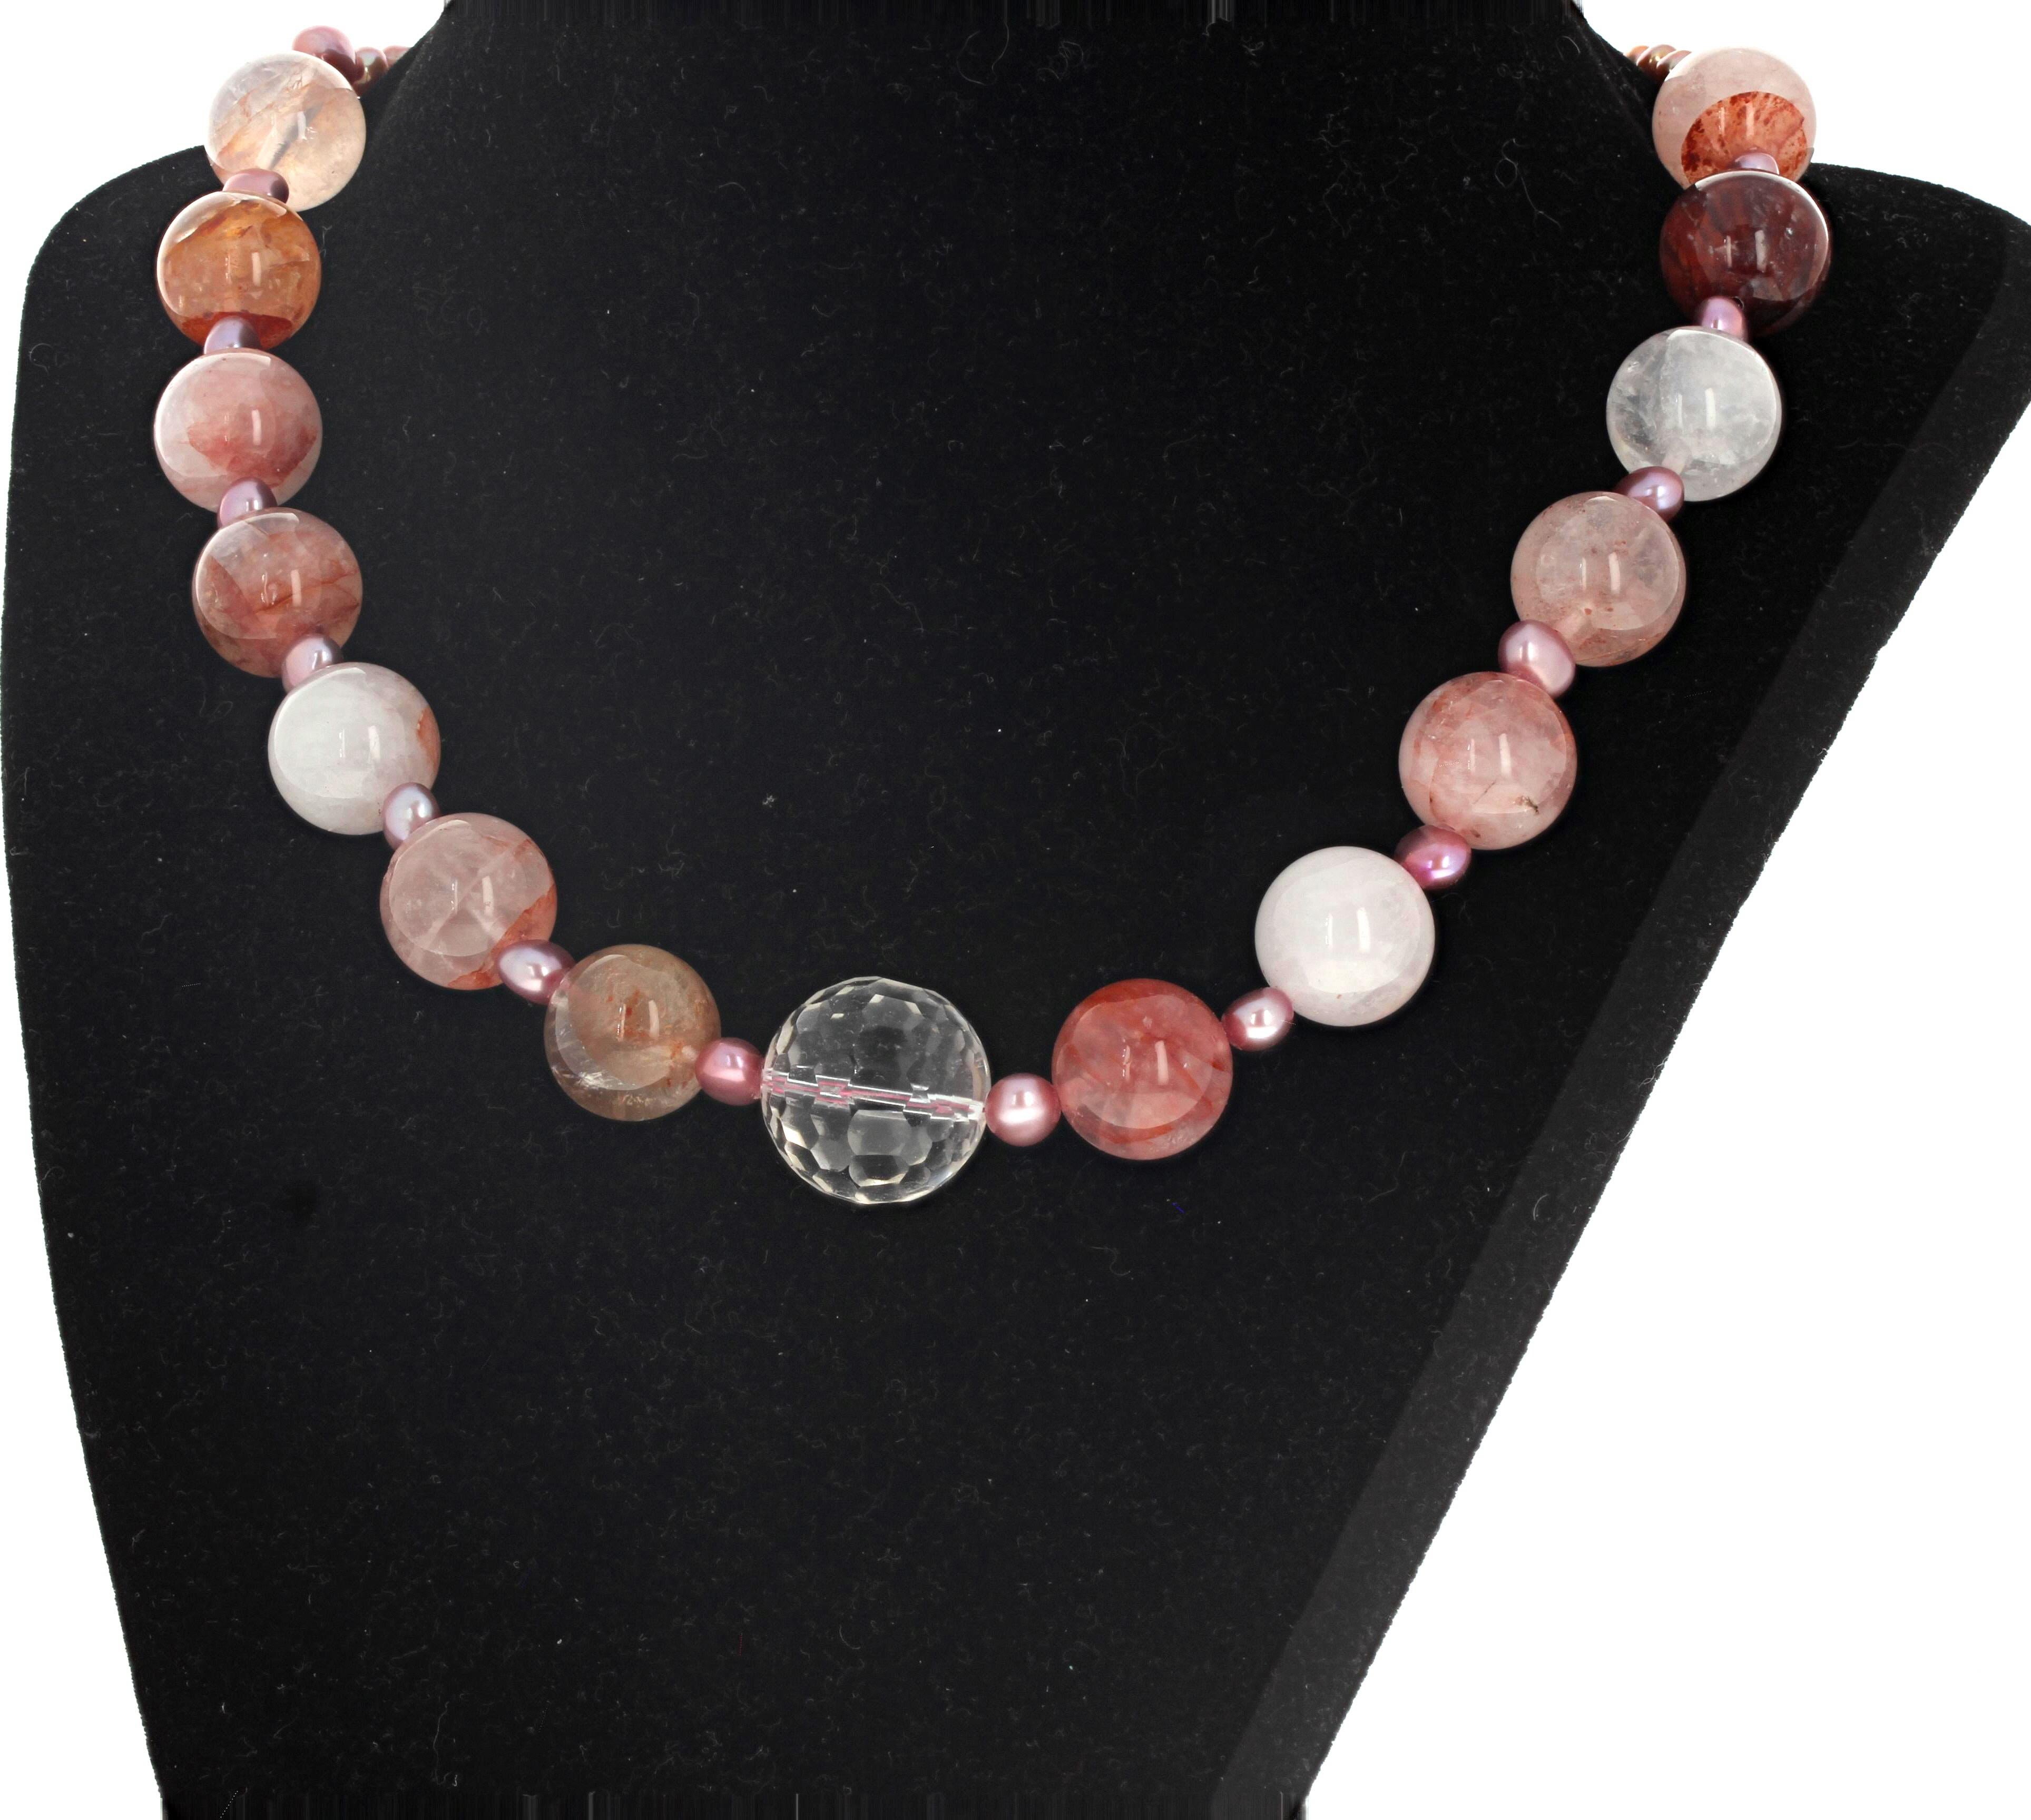 Ces quartz fraise naturels et artistiques (le plus grand est rond de 18 mm) sont rehaussés de petites perles de culture roses (8 mm) dans ce magnifique collier de 18 pouces de long.  Le fermoir est un clip argenté facile à utiliser.  